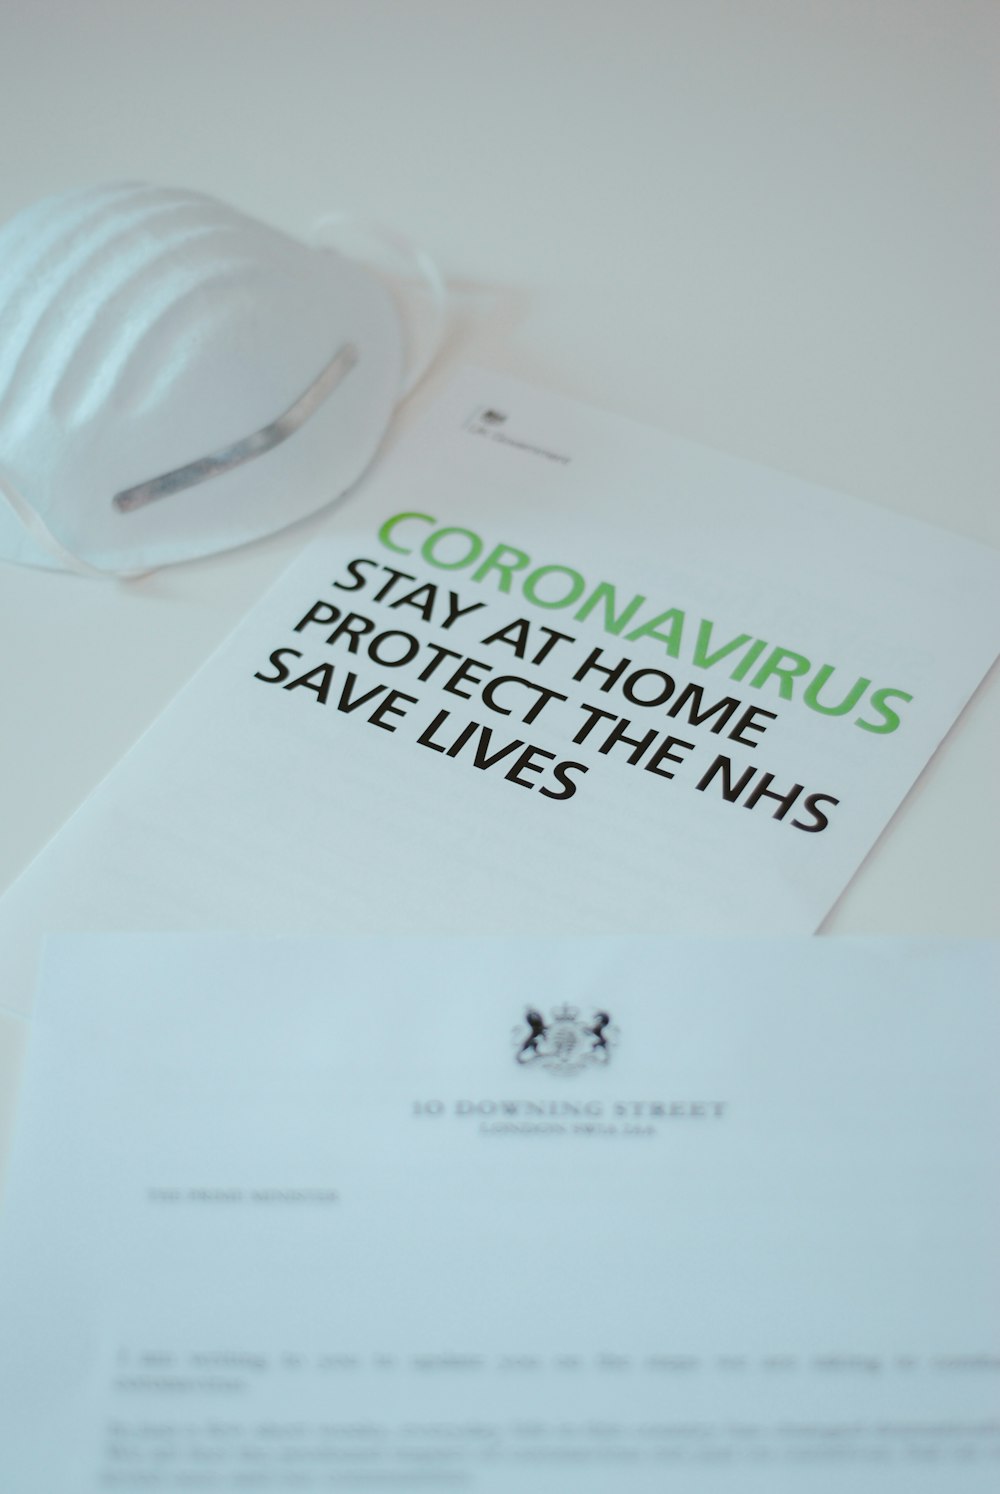 NHS: Bleiben Sie zu Hause, um Leben zu schützen